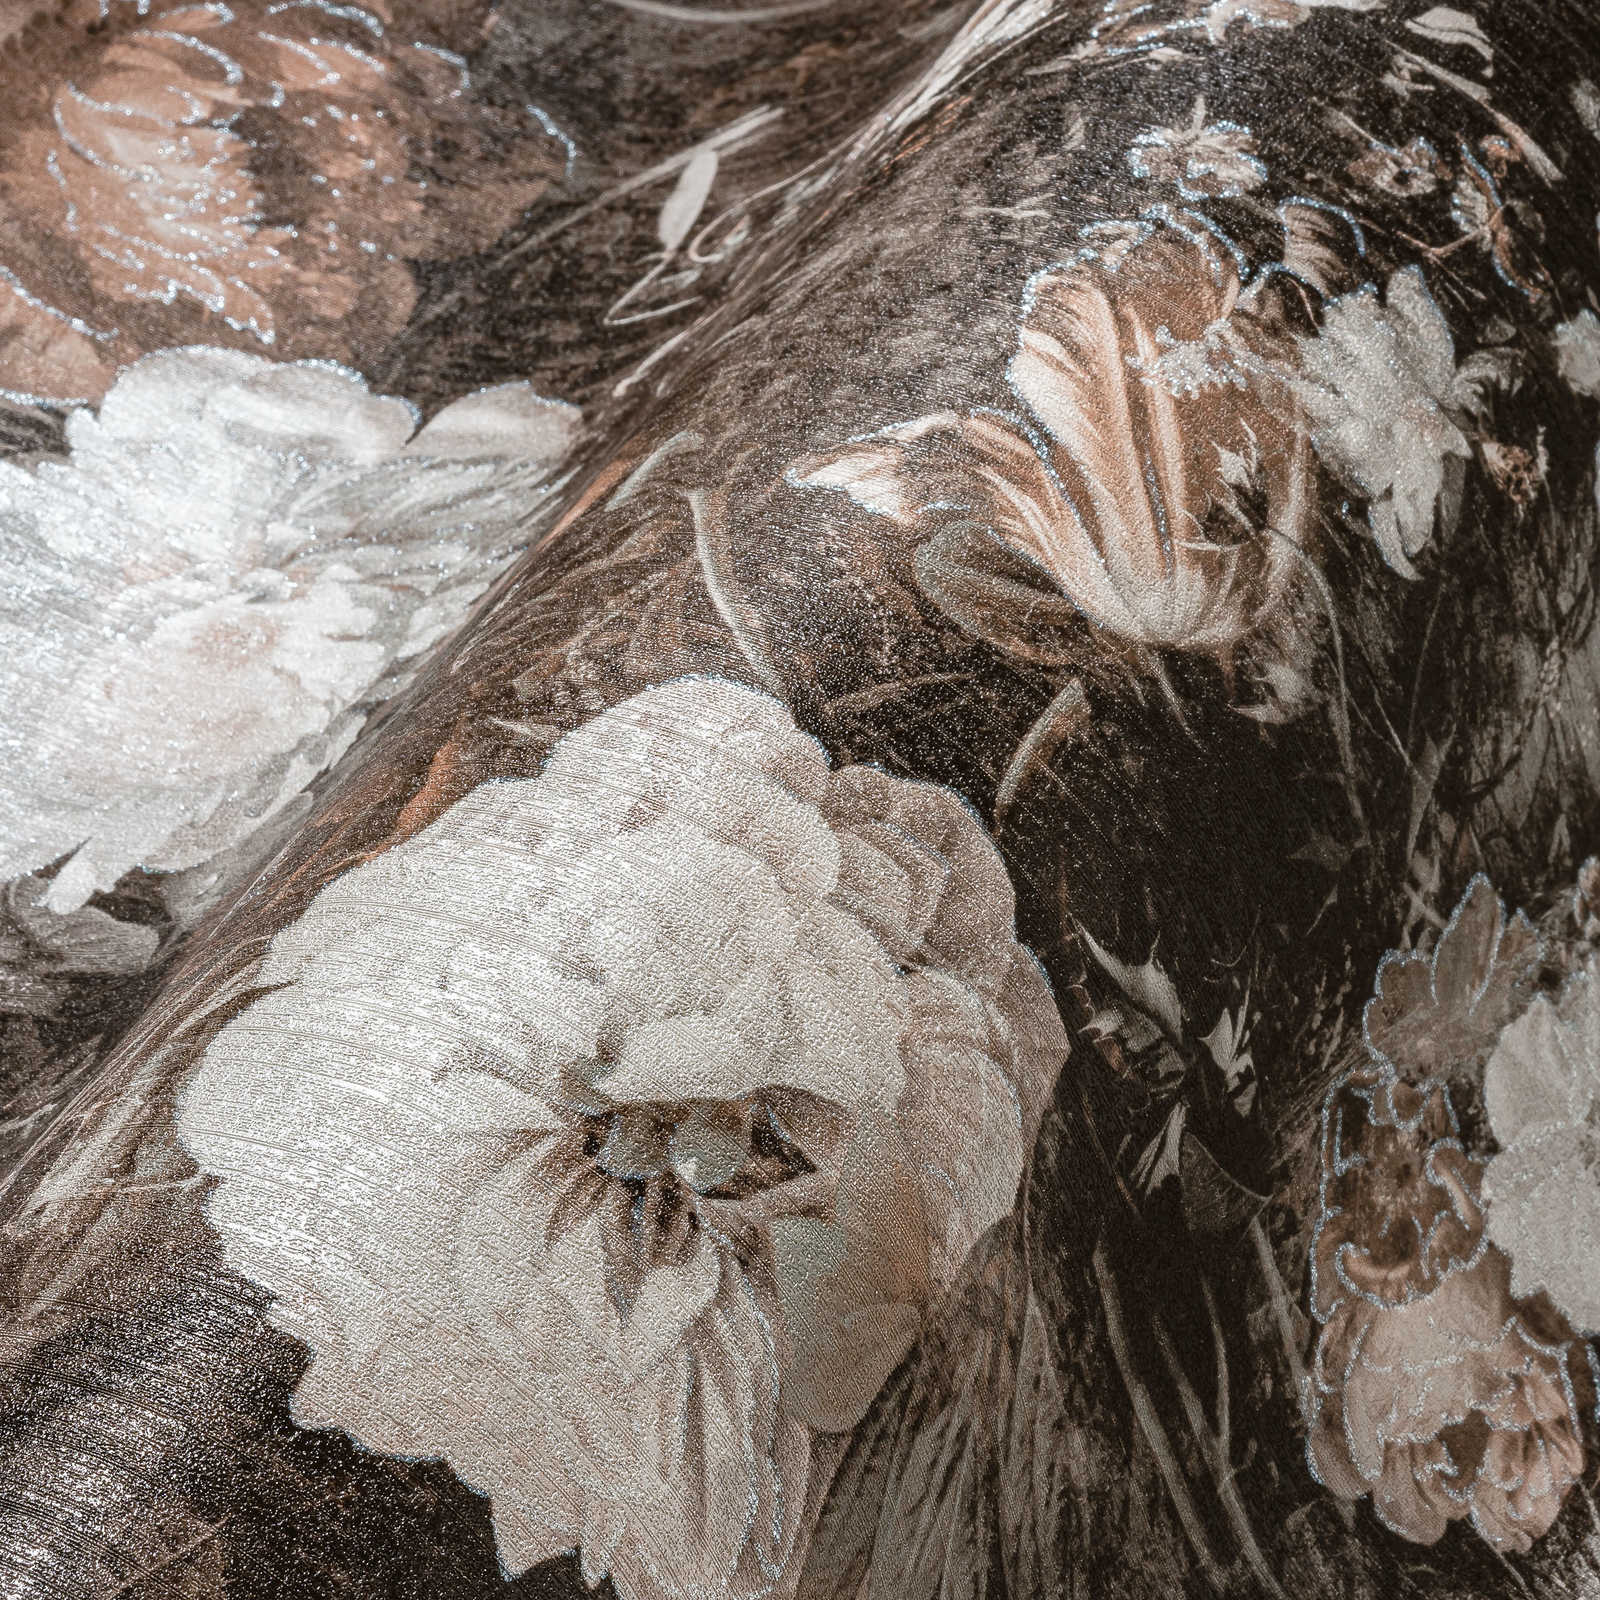             Vintage Blumentapete Klassik Rosen-Muster – Creme, Braun
        